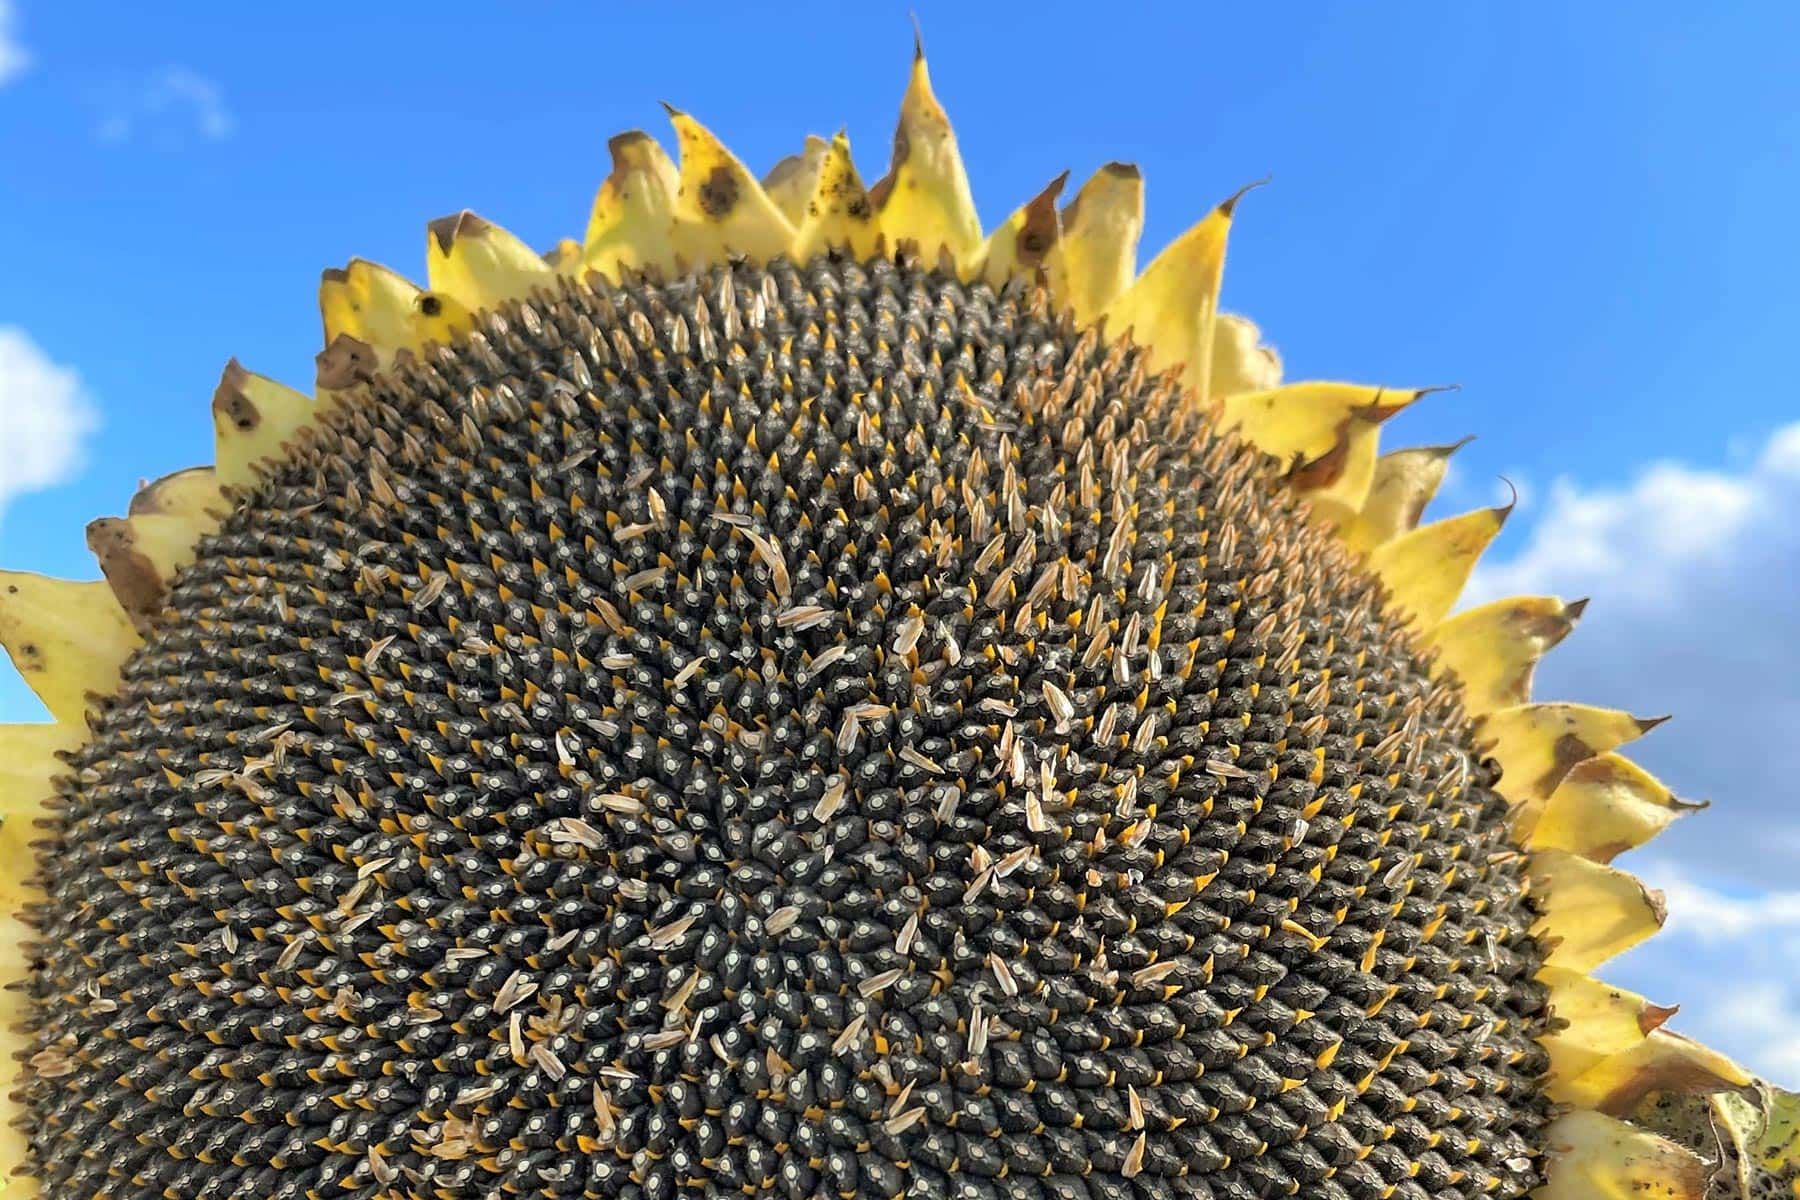 flower of a sunflower in a field